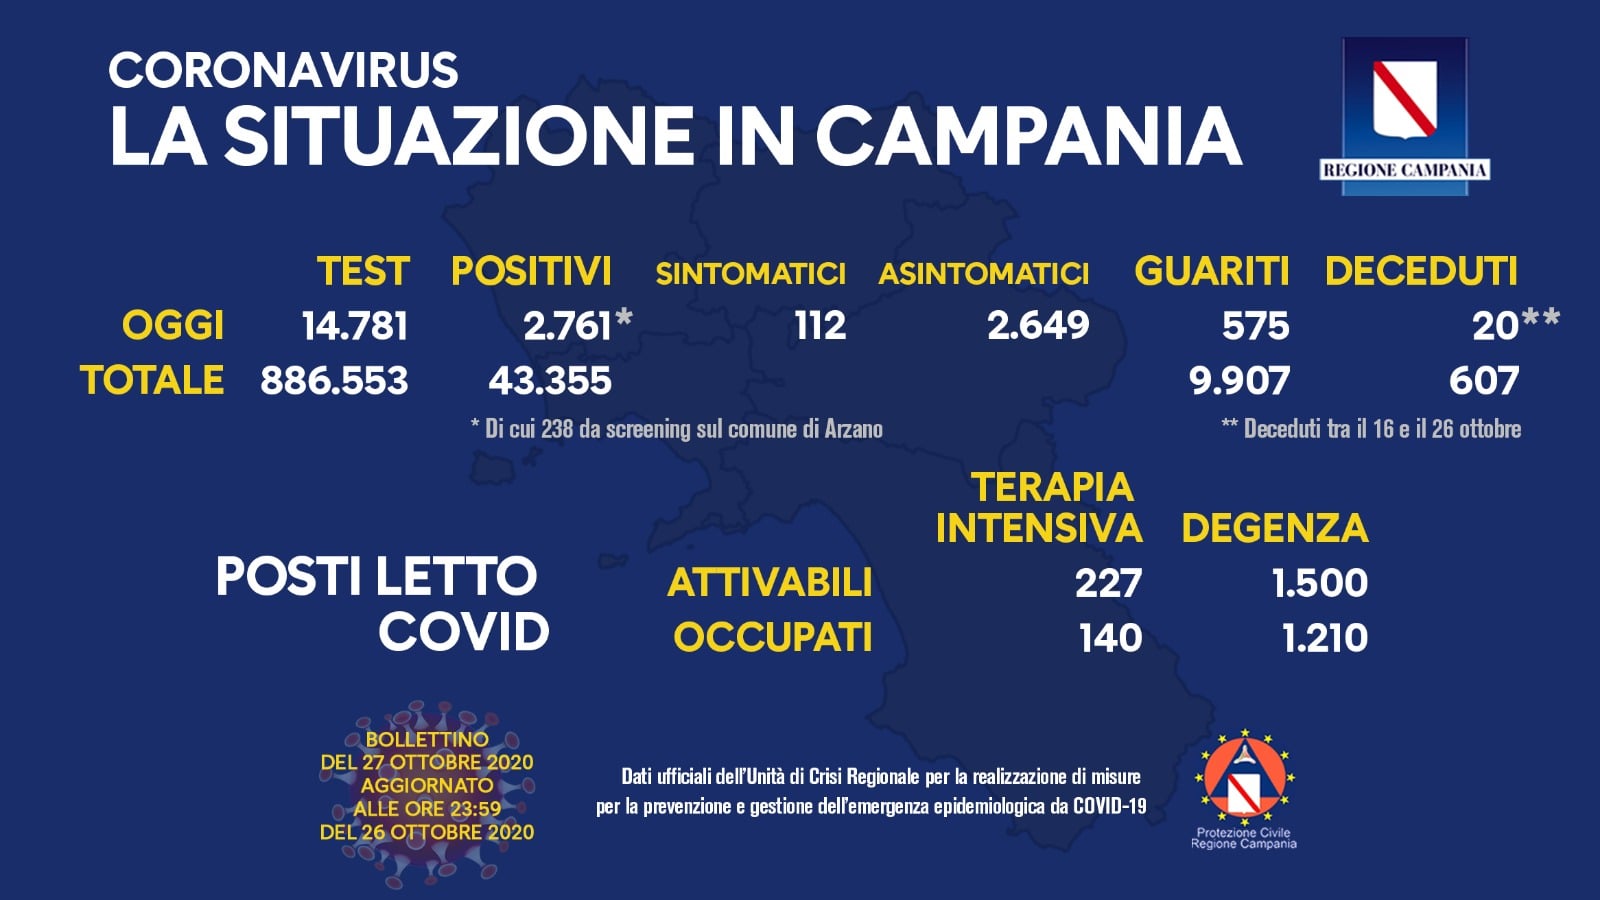 Covid19 in Campania, il bollettino di oggi: i contagi aumentano